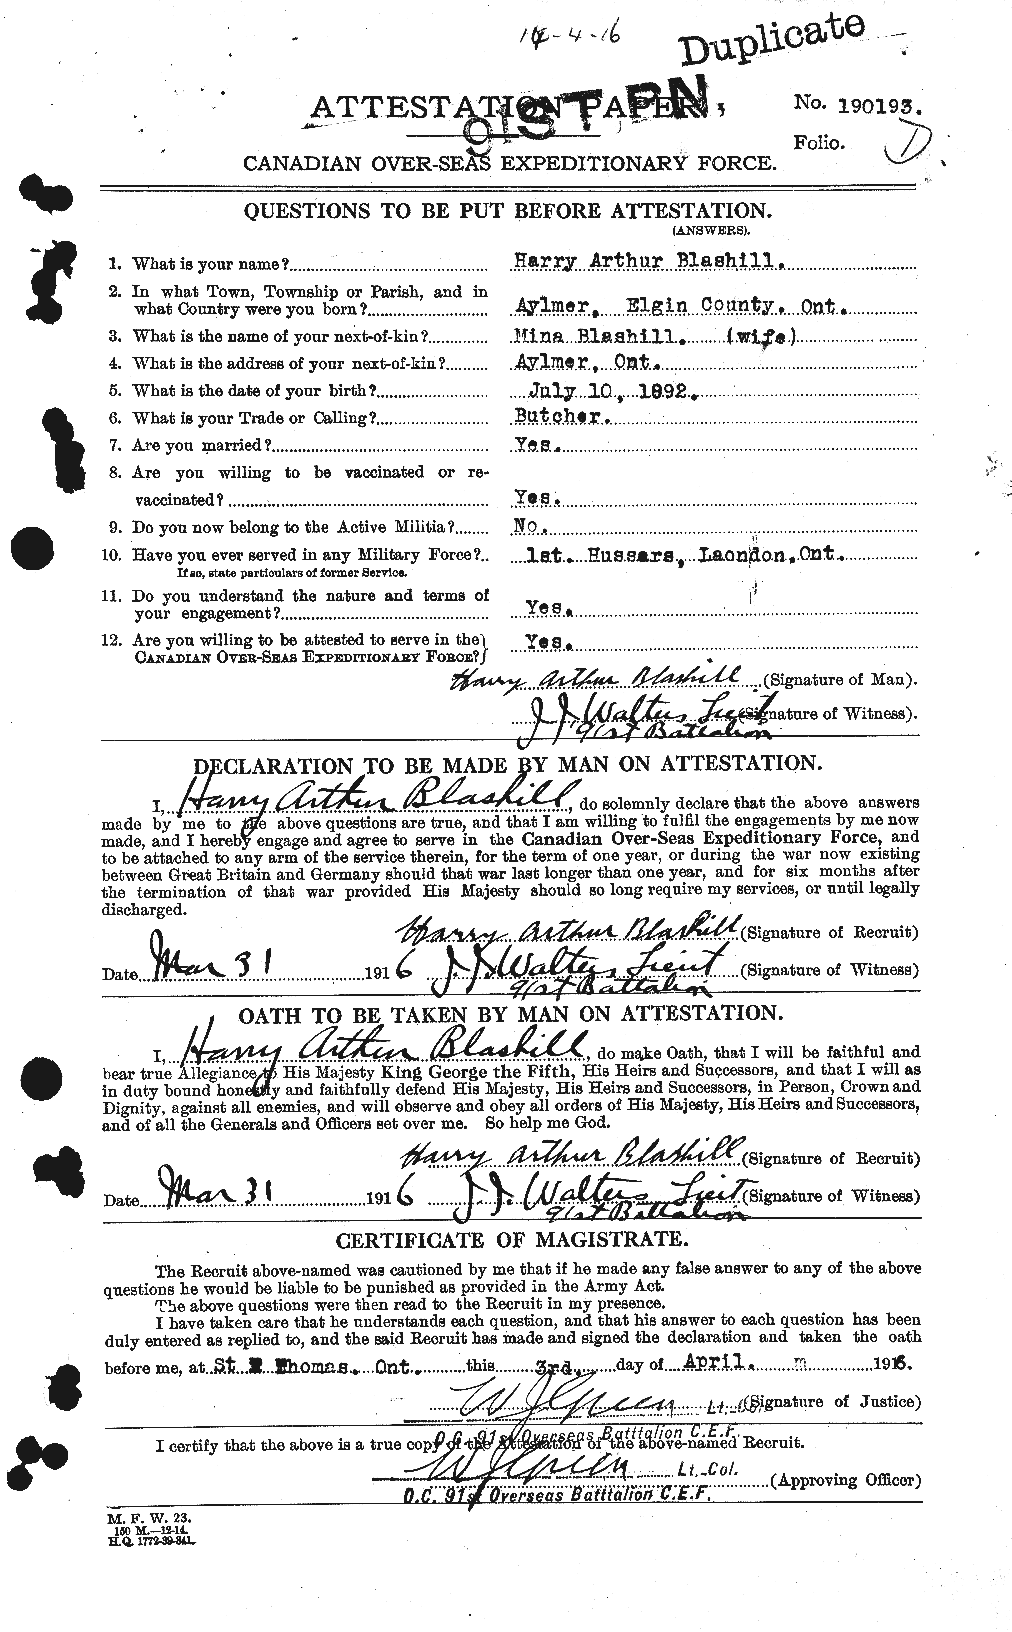 Dossiers du Personnel de la Première Guerre mondiale - CEC 247780a